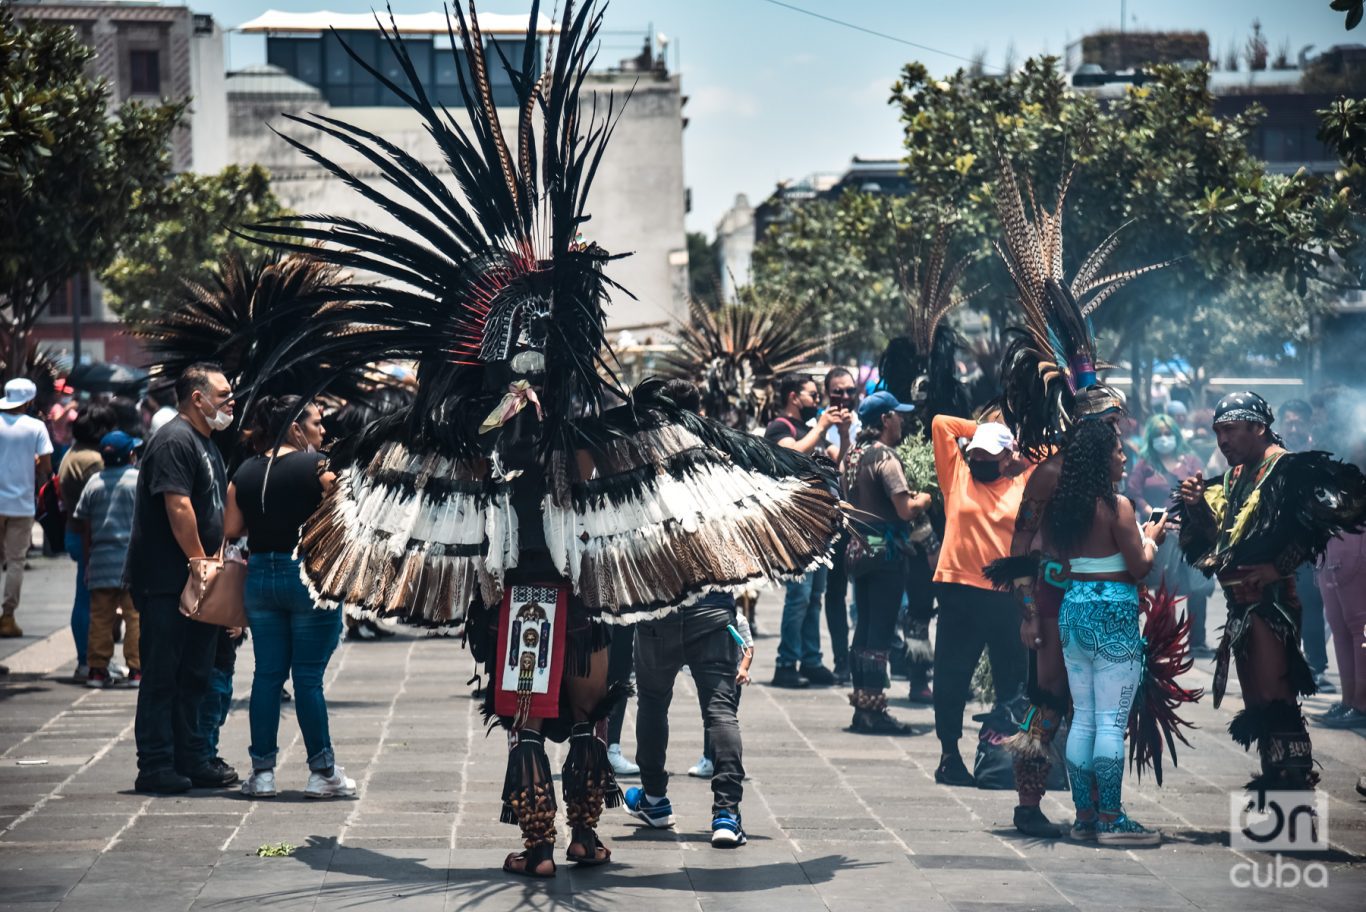  Visten atuendos que evocan a los antiguos aztecas, con llamativos colguijes que semejan las plumas del quetzal. Foto: Kaloian.